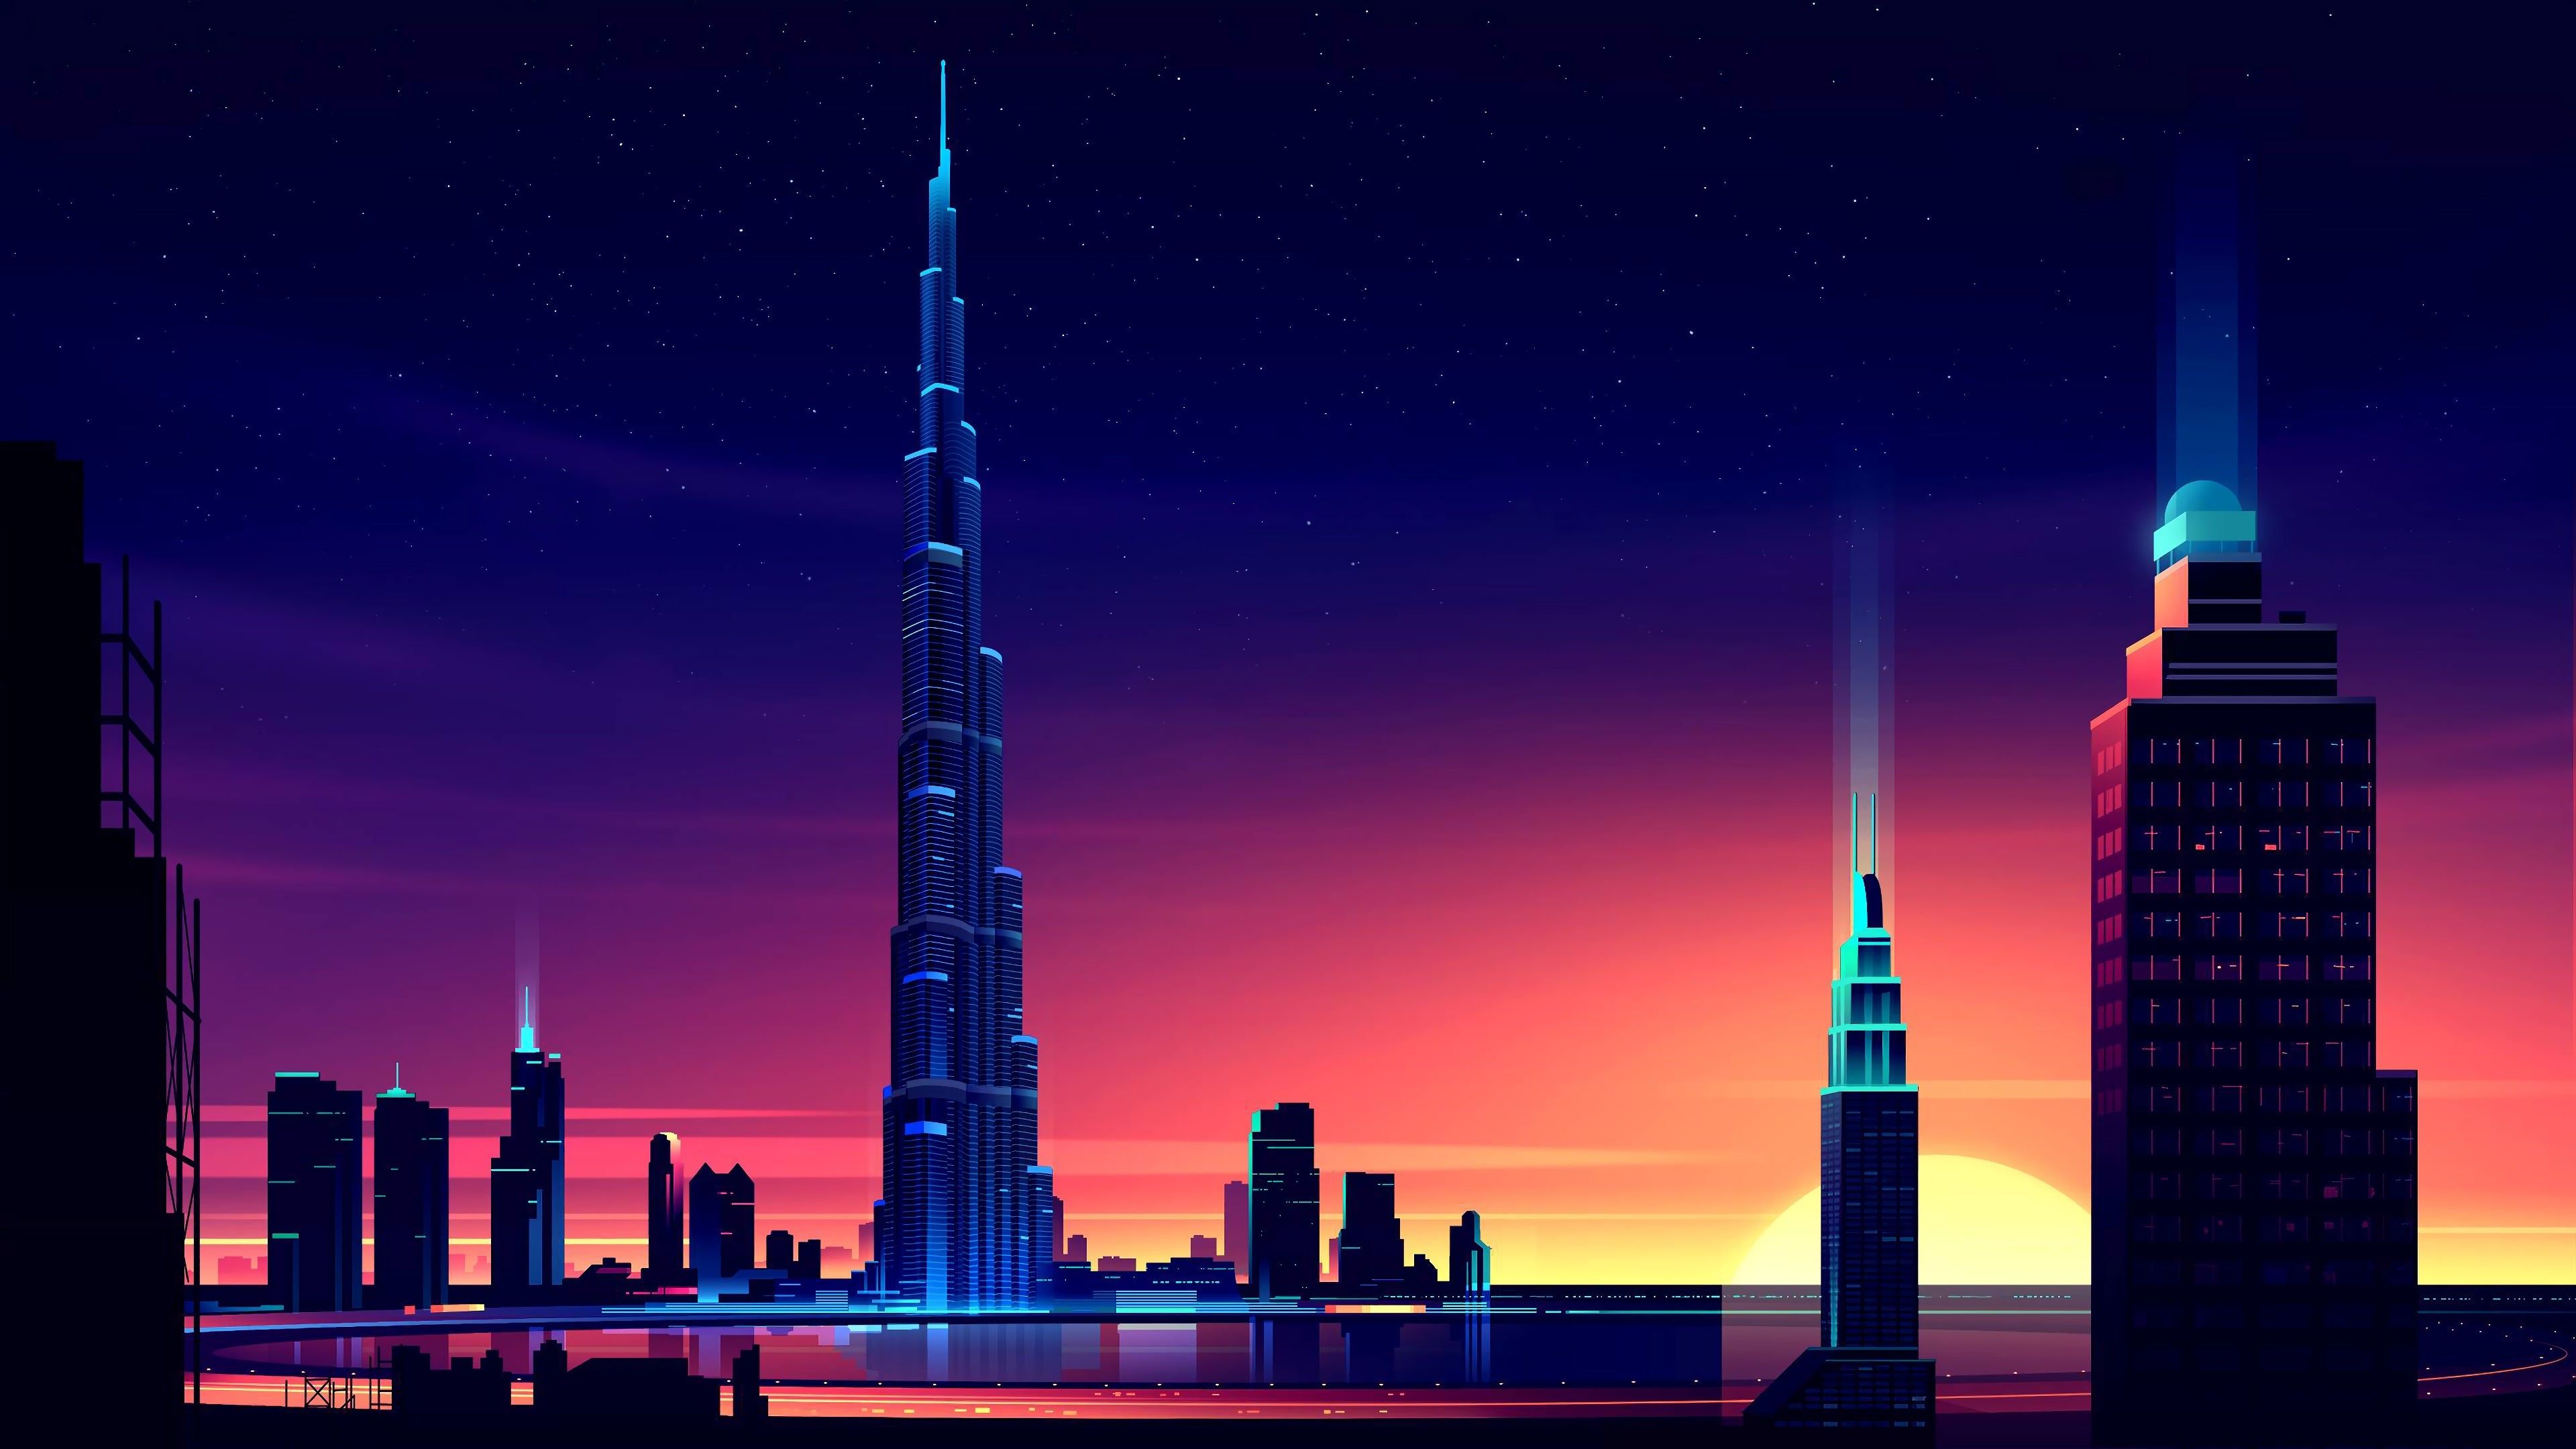 قشنگ ترین نقاشی دیجیتالی برج خلیفه امارات در شب